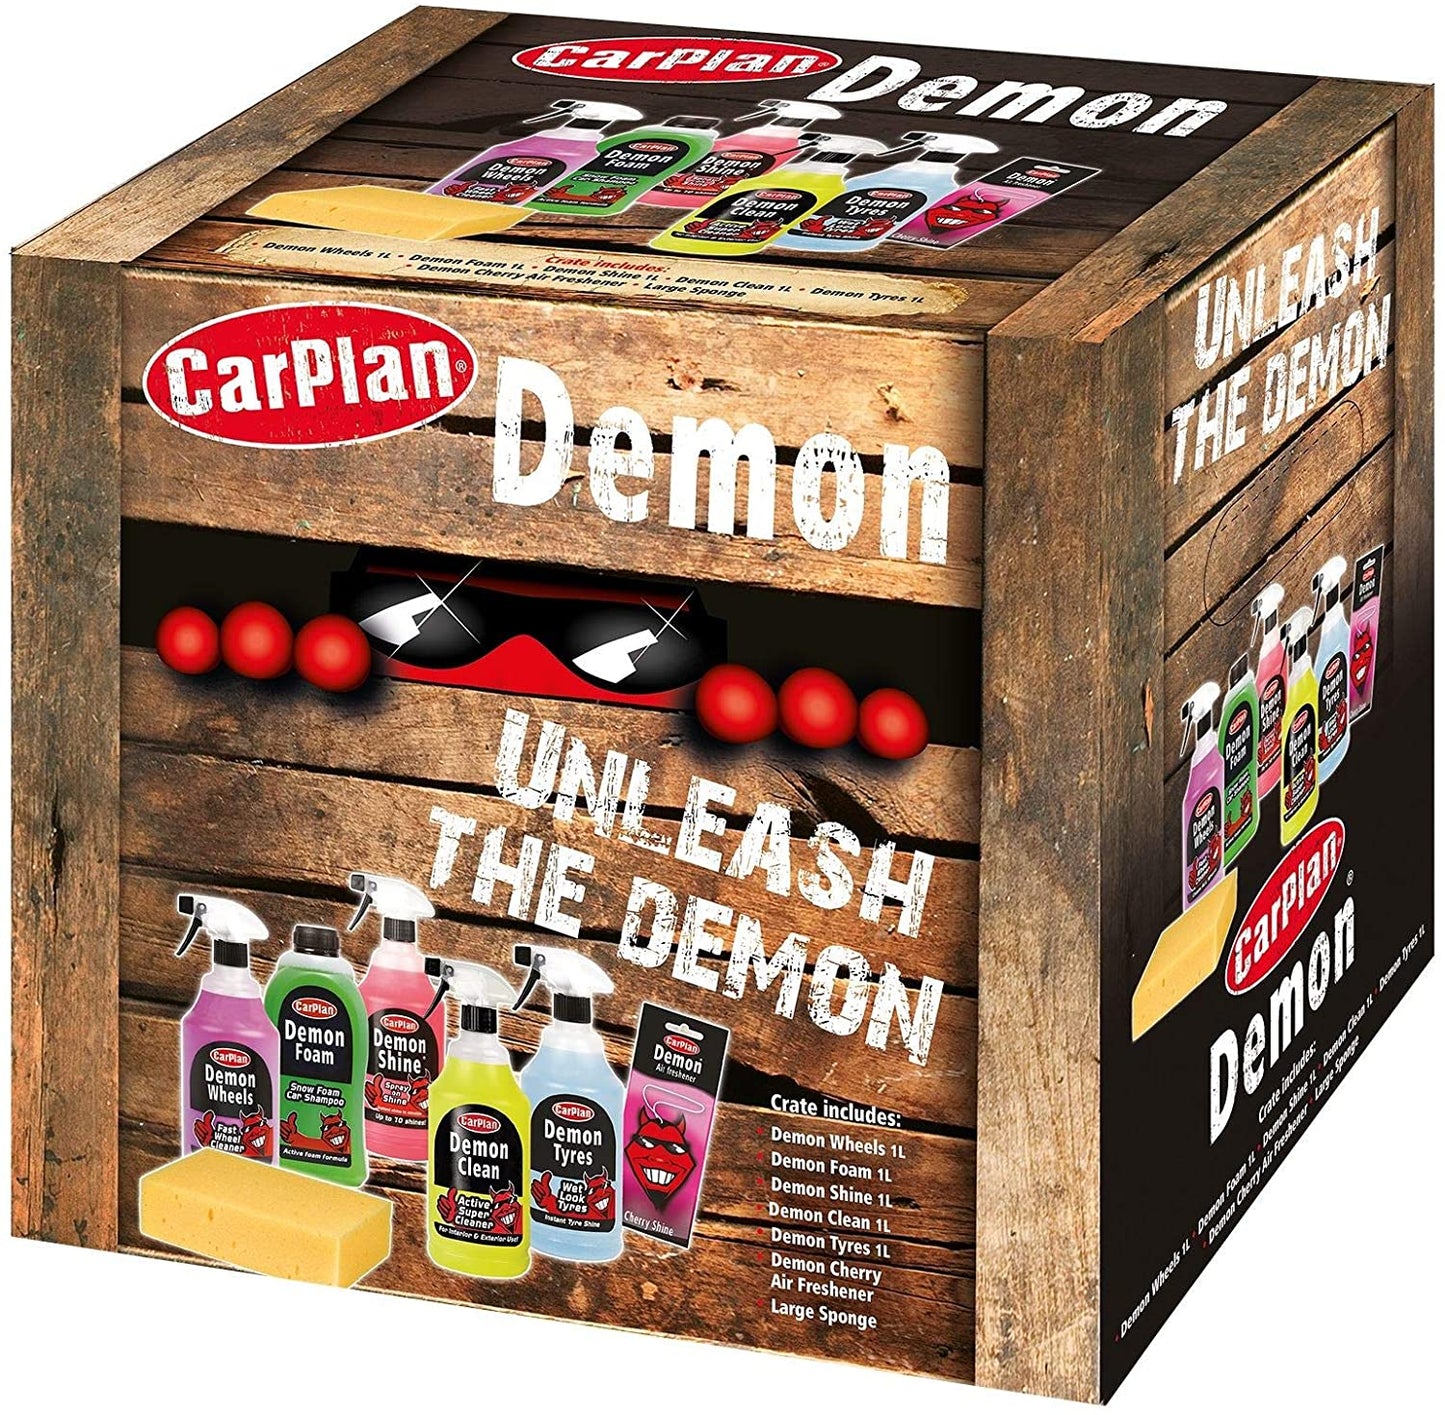 CarPlan Demon 7 Piece Valeting Gift Pack